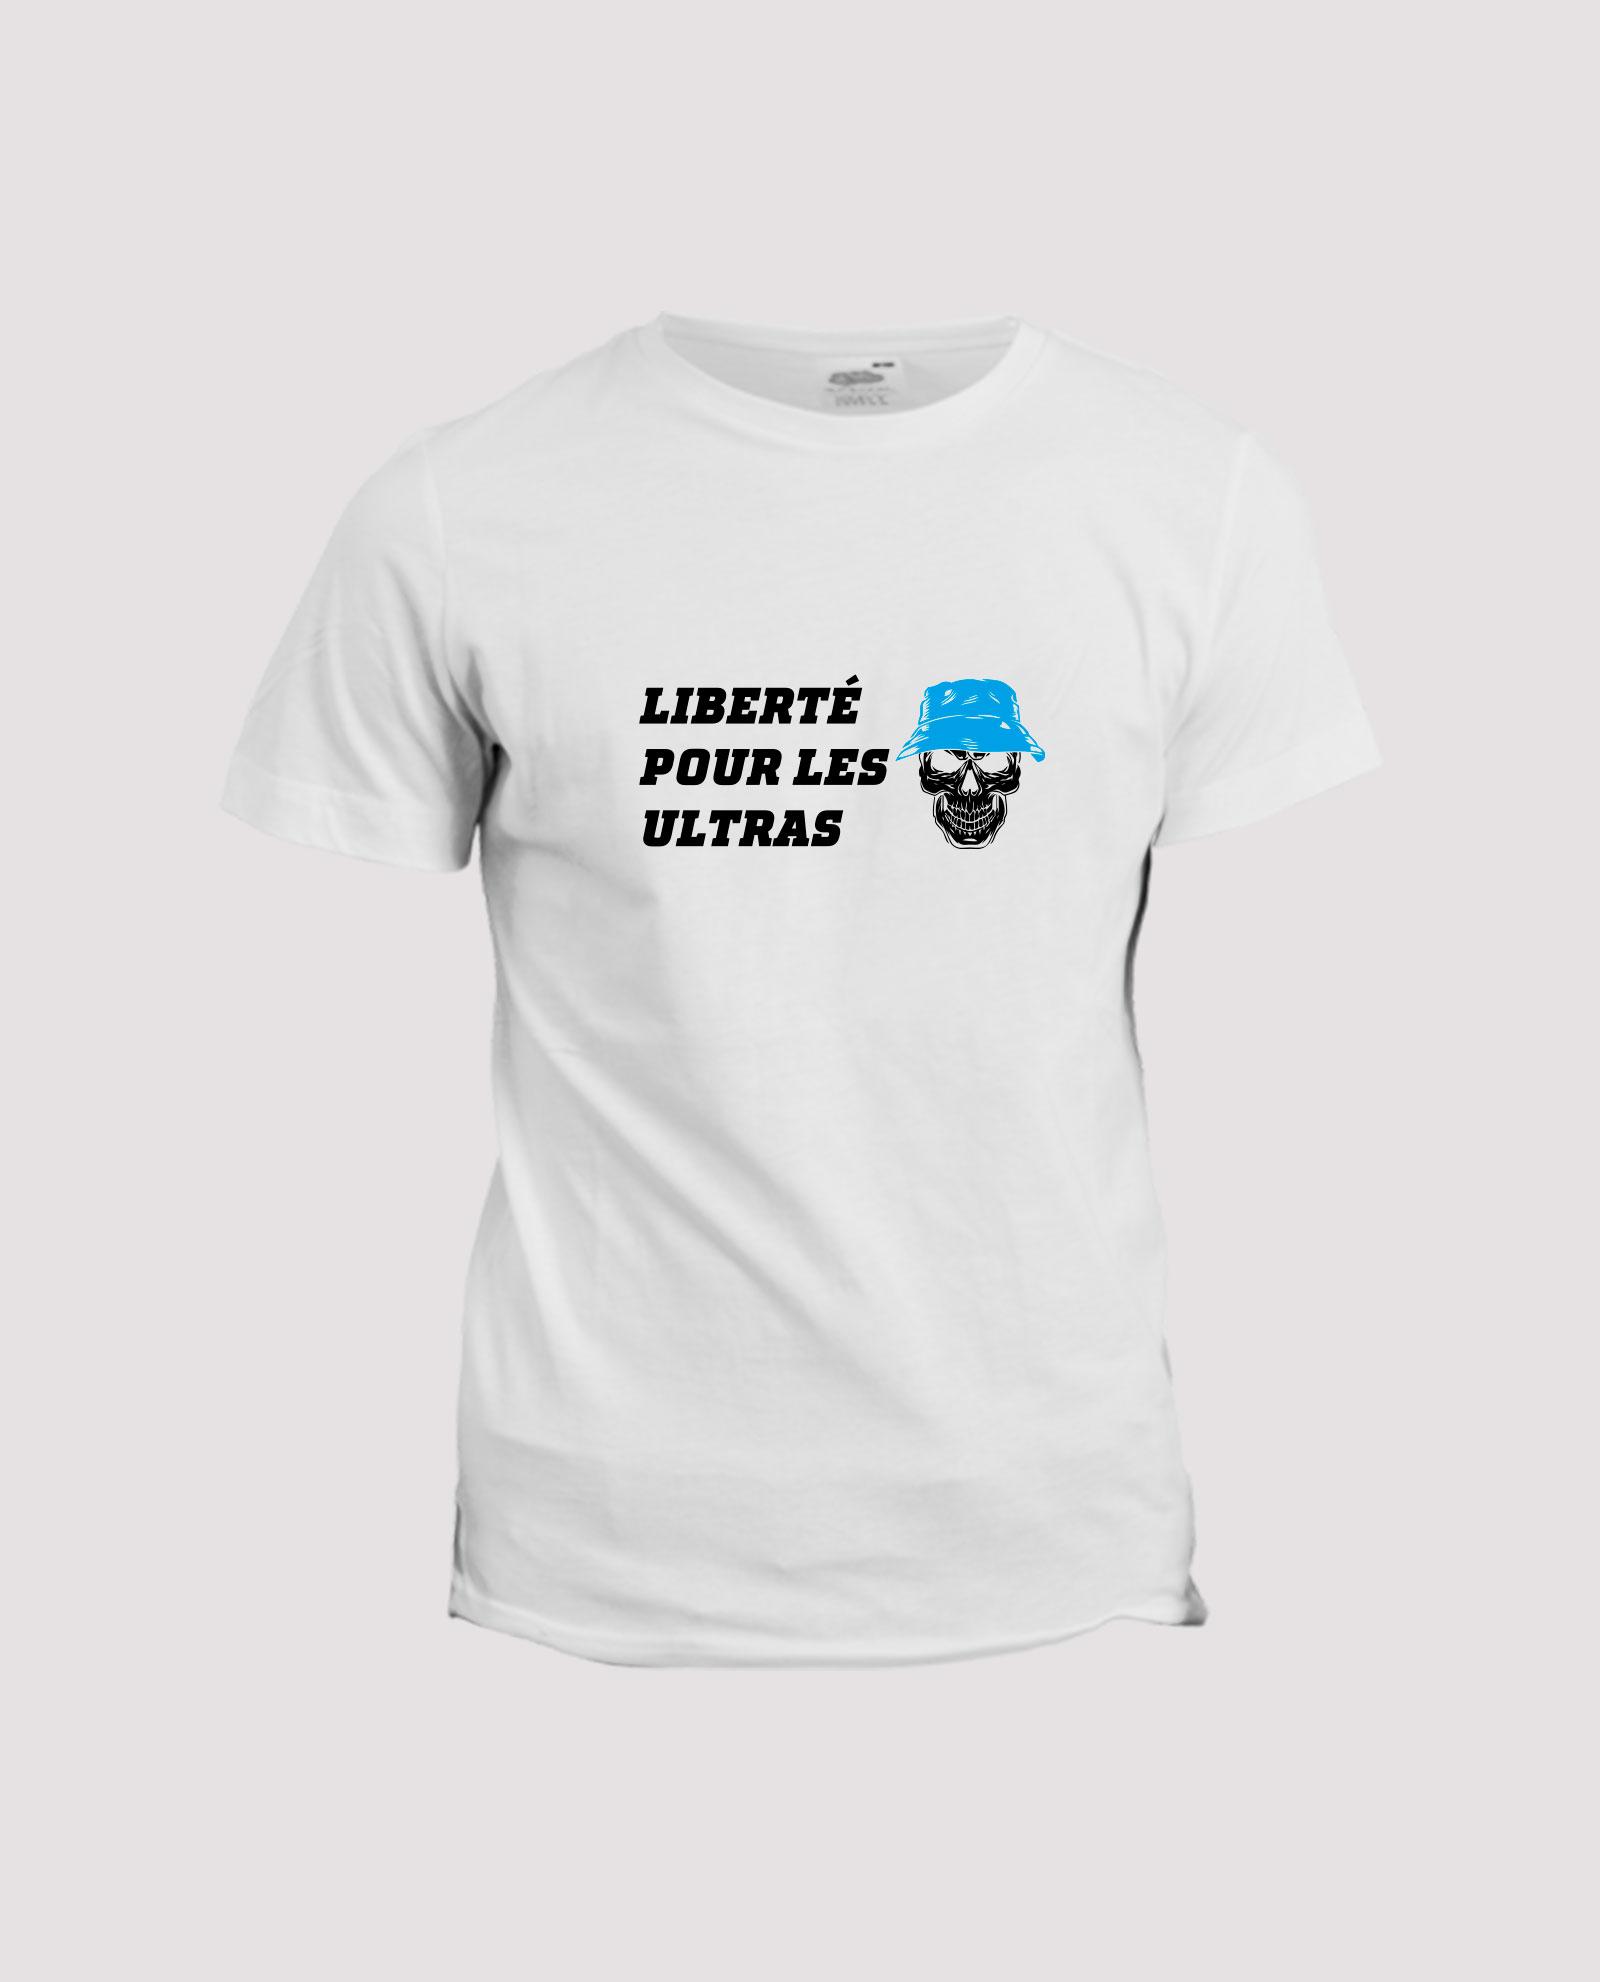 la-ligne-shop-t-shirt-teeshirt-blanc-liberte-pour-les-ultras-bleu-ciel